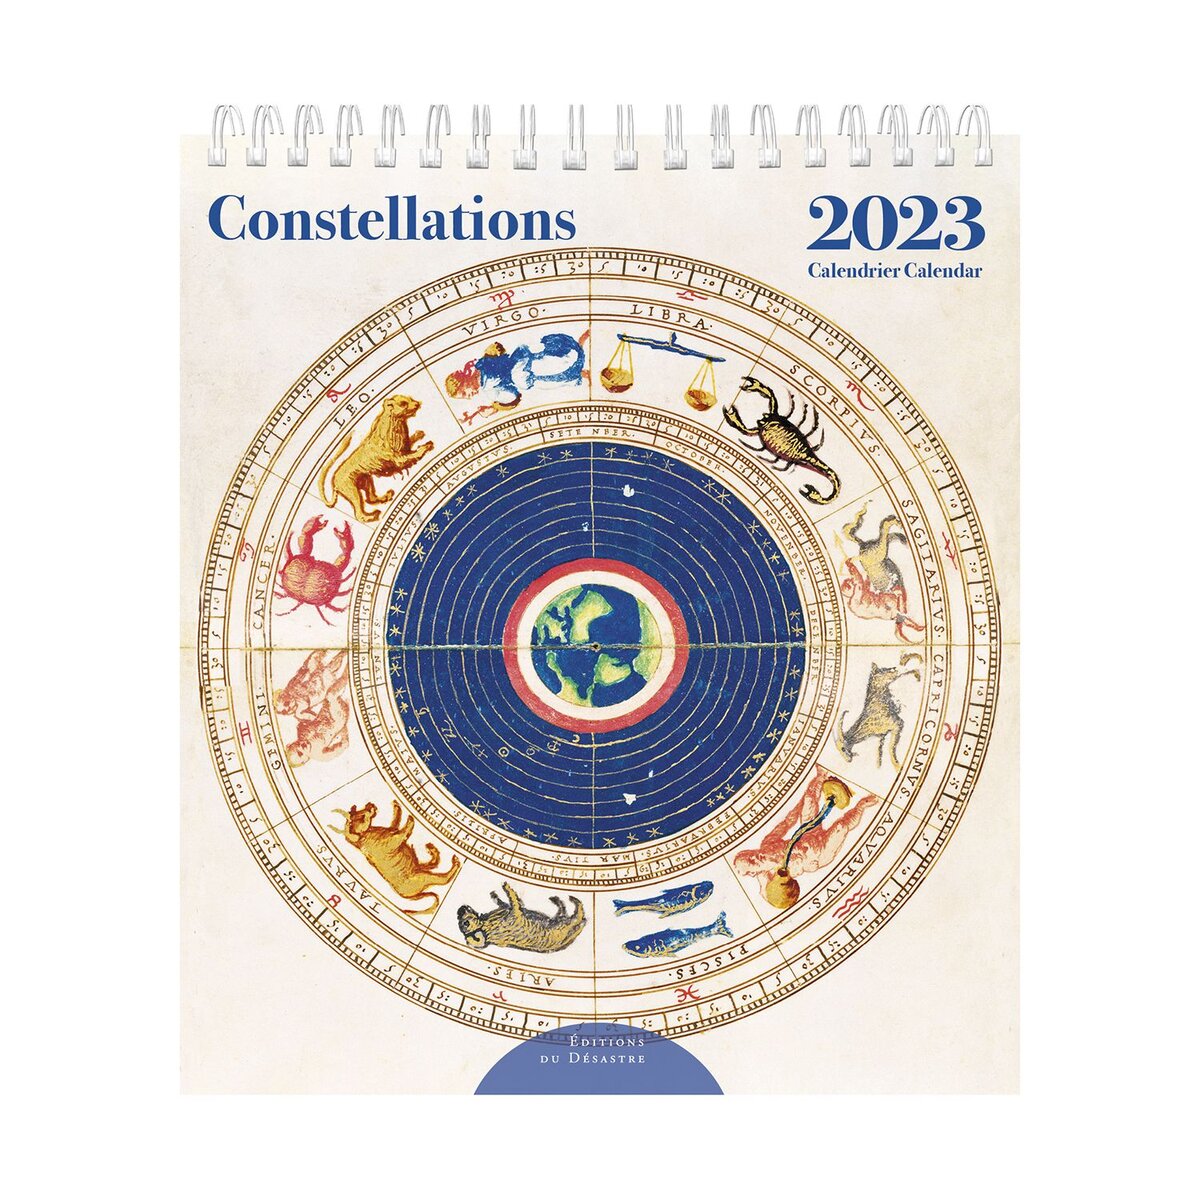 Mini calendrier de bureau 2023 Editions du désastre - Constellations -  14x16 cm - Calendriers 2023 - Agendas - Calendriers